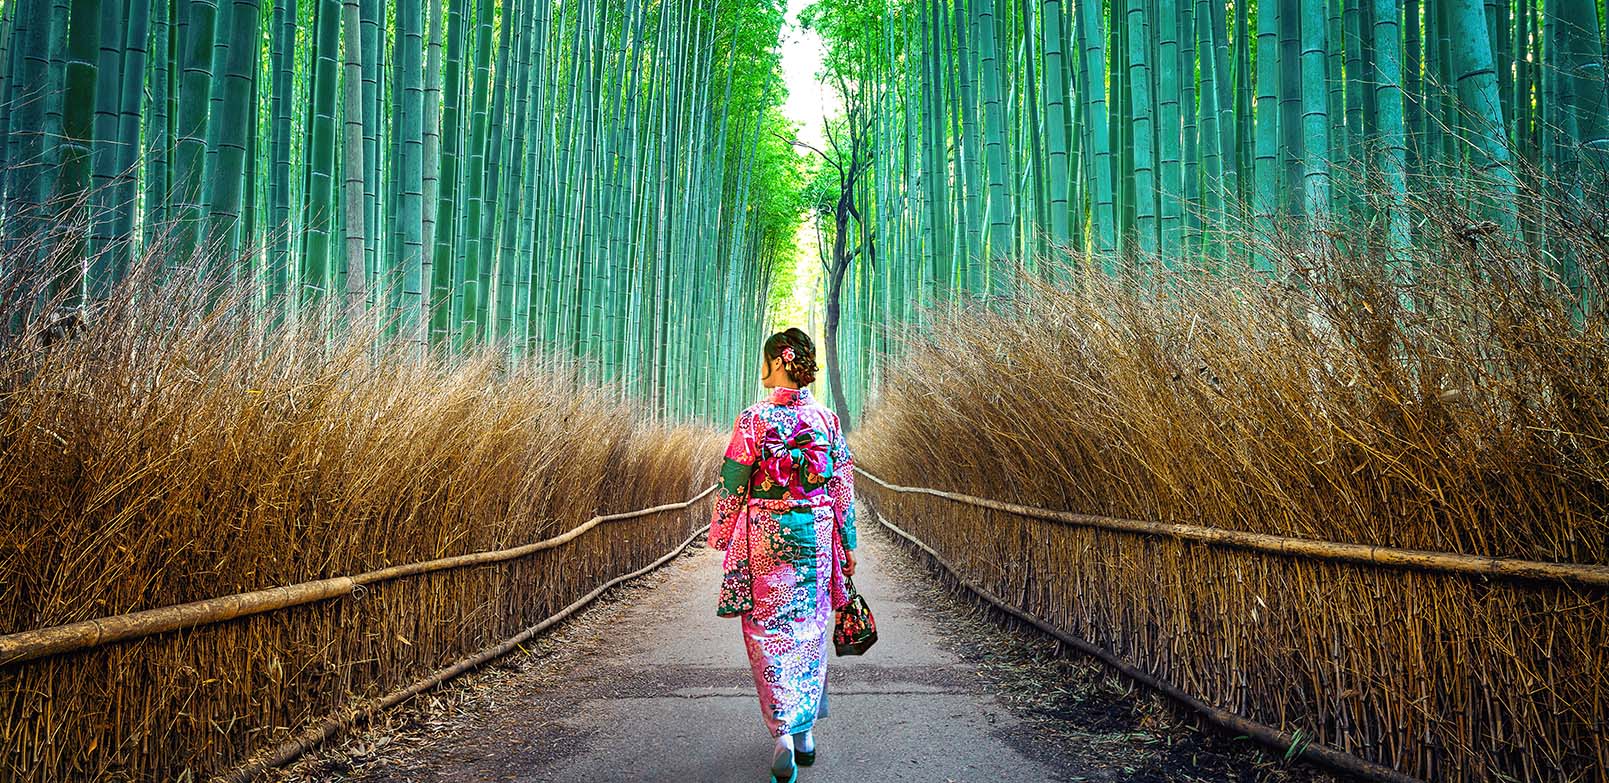 7 Wisata Alam di Jepang yang Indah buat Menenangkan Pikiran